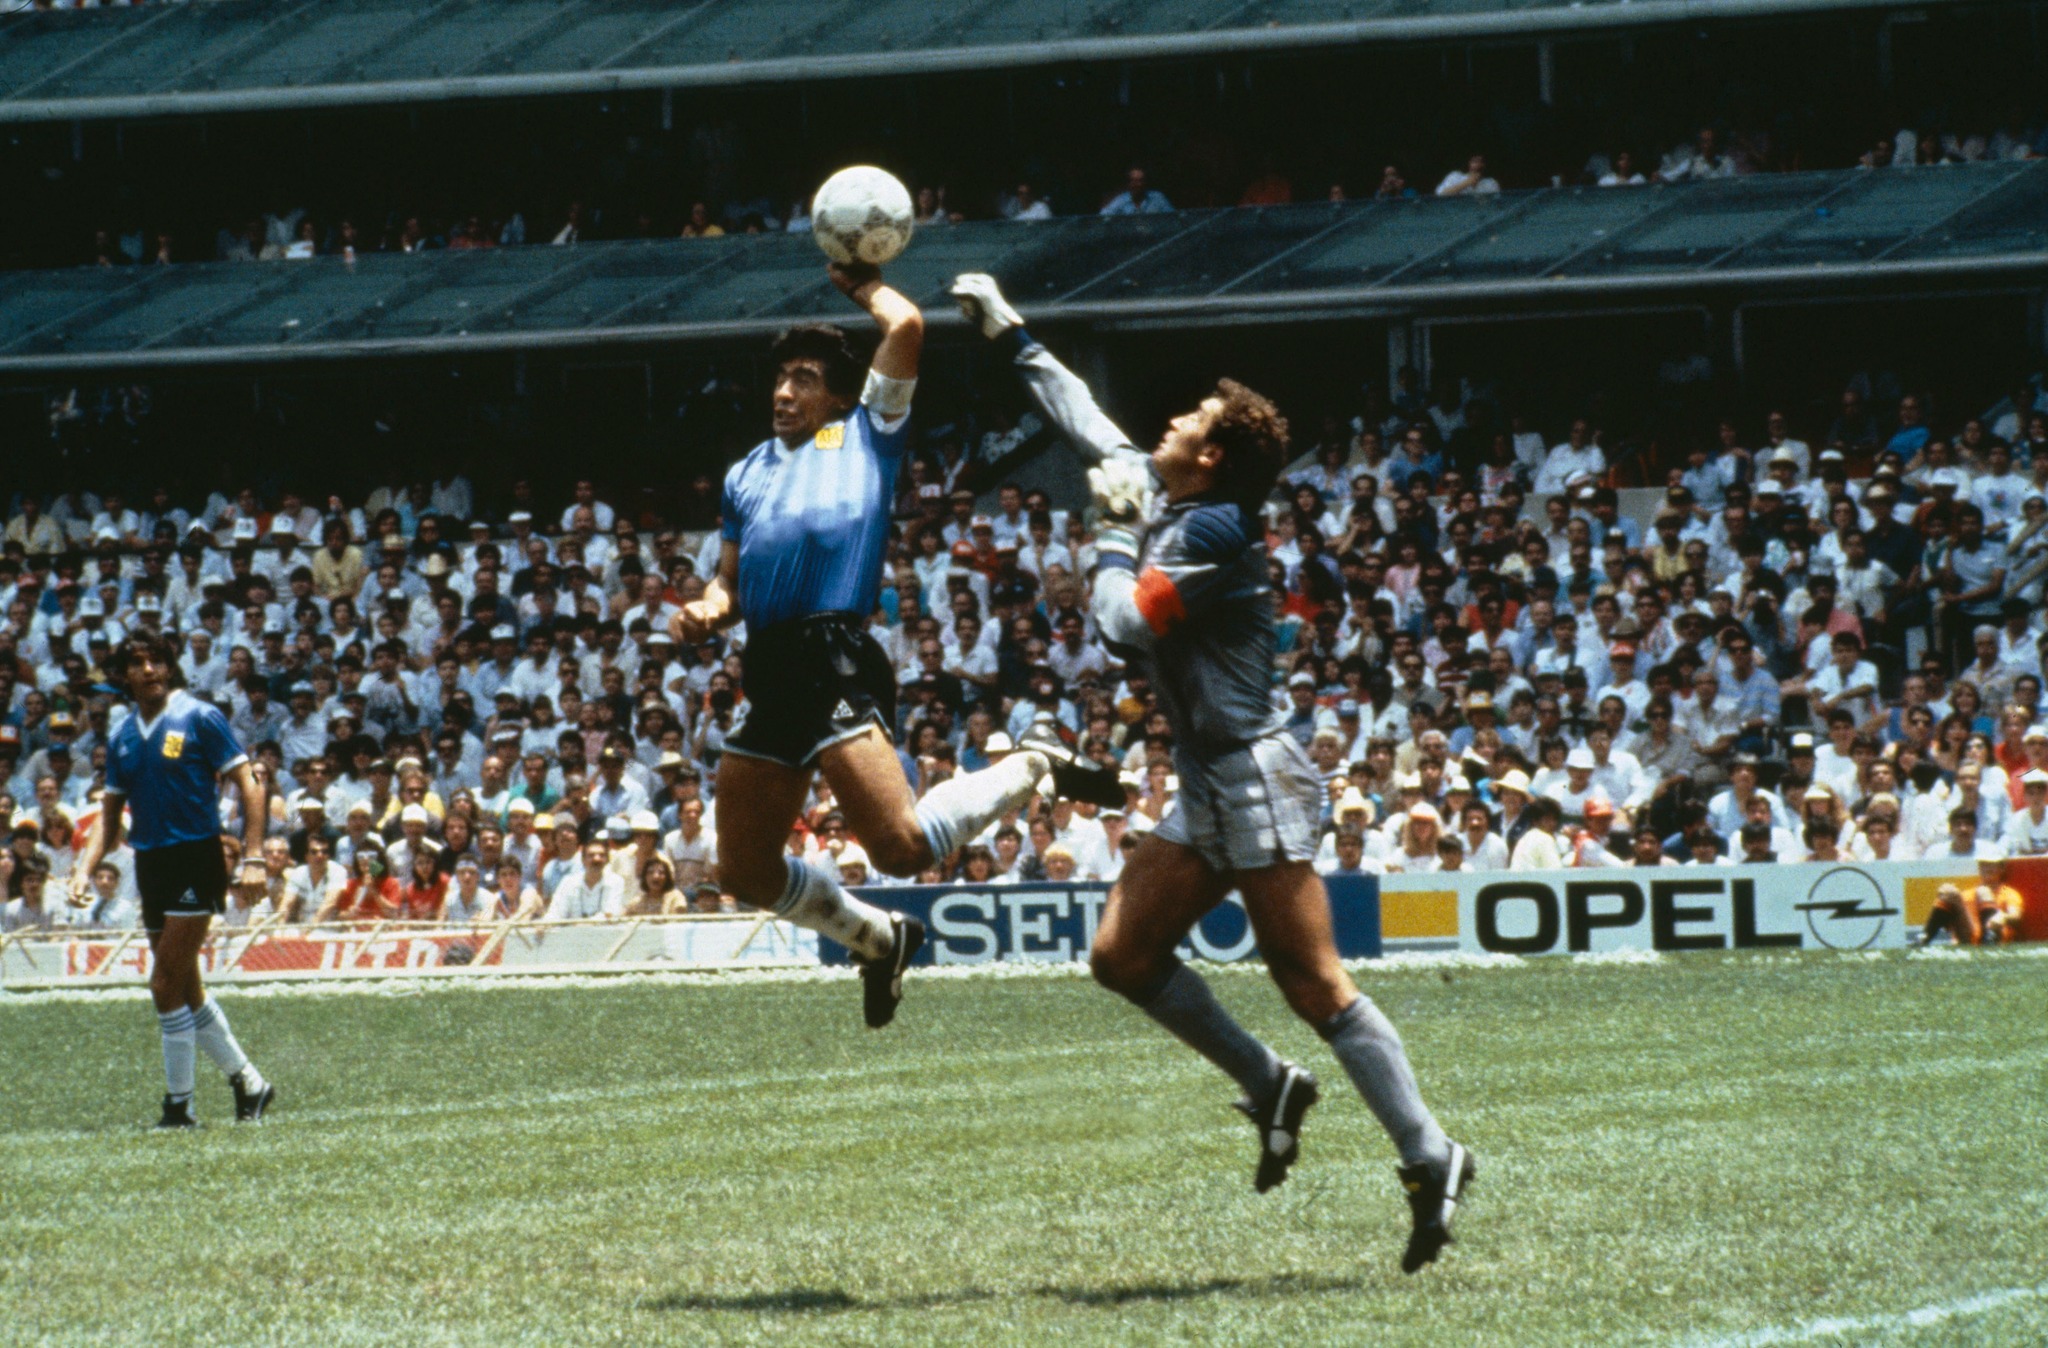 ১৯৮৬ সালের বিশ্বকাপ ফুটবলের সেই বিস্ময়কর গোলটা নিয়ে এখনও শেষ হয়নি বিতর্ক